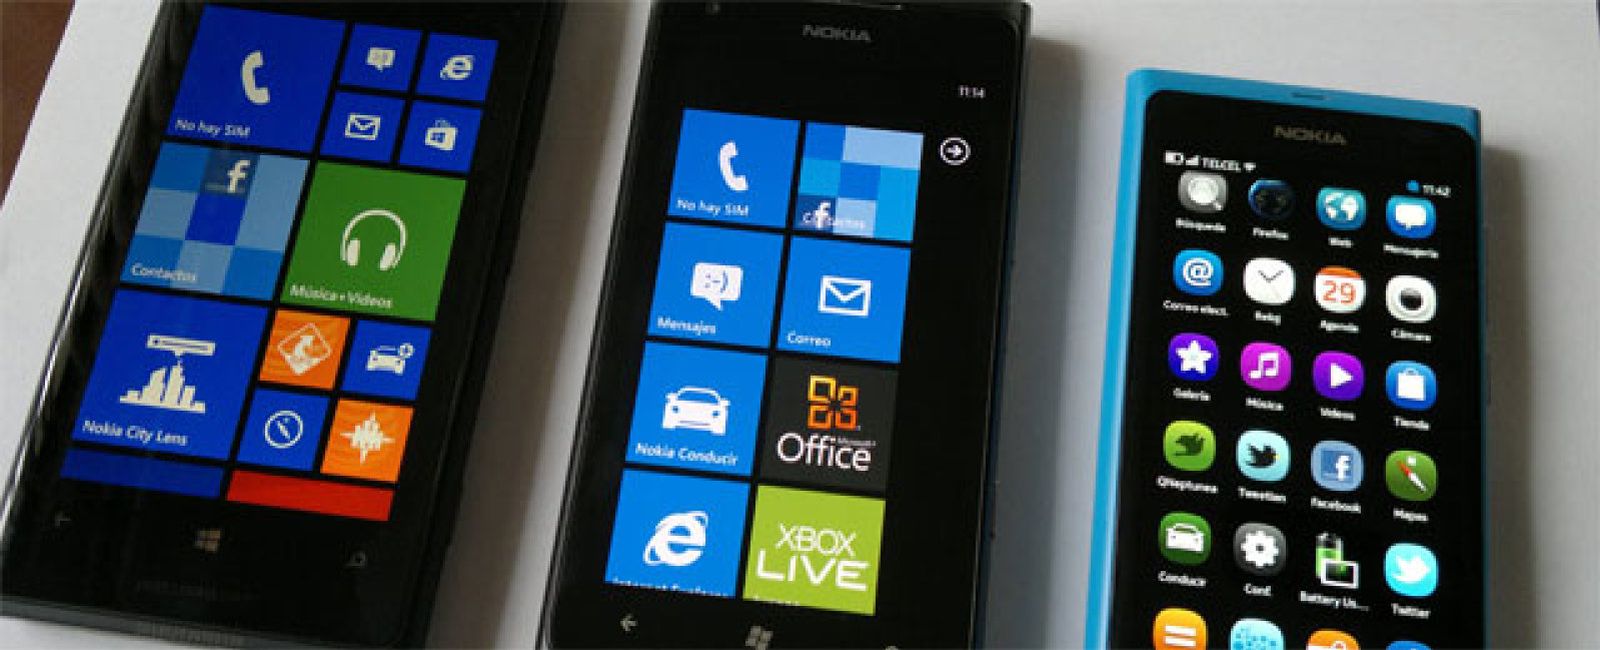 Foto: Los Lumia despegan en el mercado: ¿Primer brote verde para Nokia?